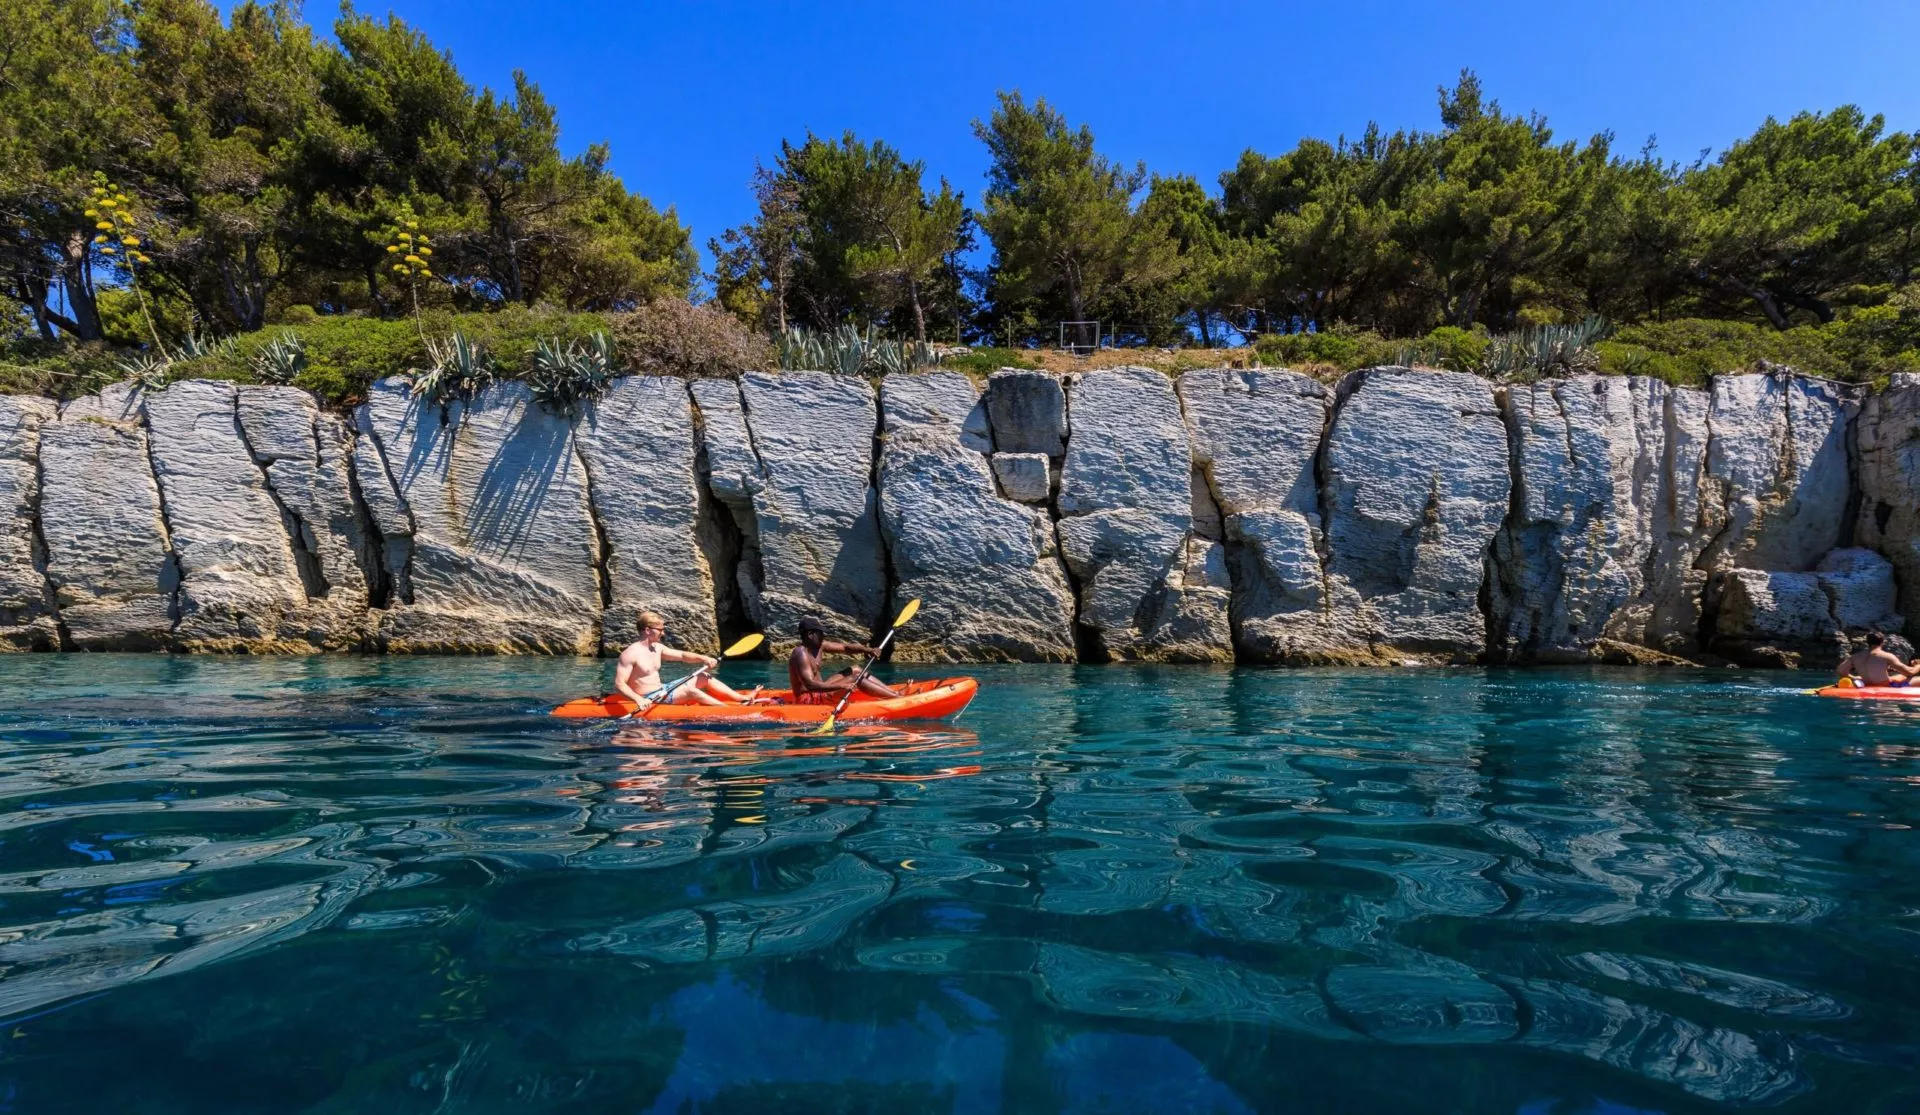 x-Adventure Dubrovnik Sea Kayaking Tours & Kayak Rental in Croatia, Europe | Kayaking & Canoeing - Rated 1.1